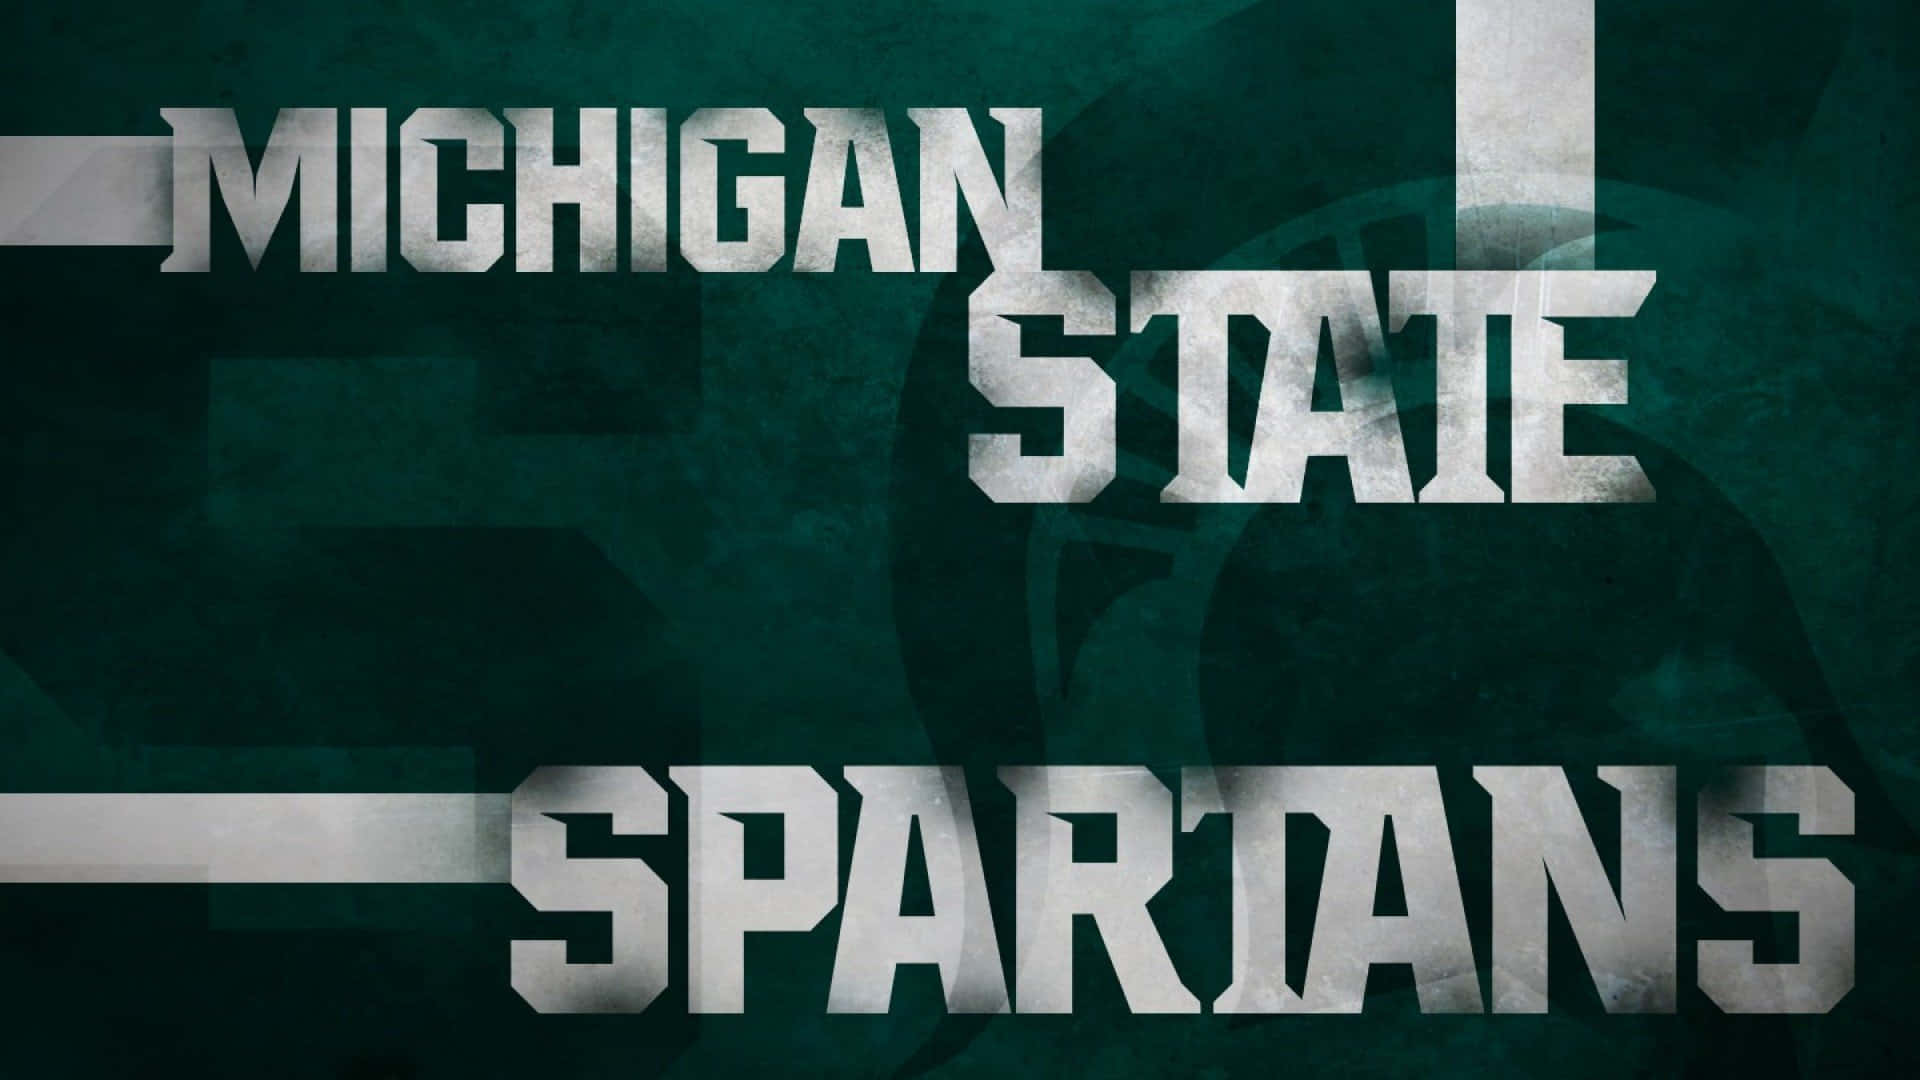 Michiganstate Spartans Text På Grön Bakgrund. Wallpaper